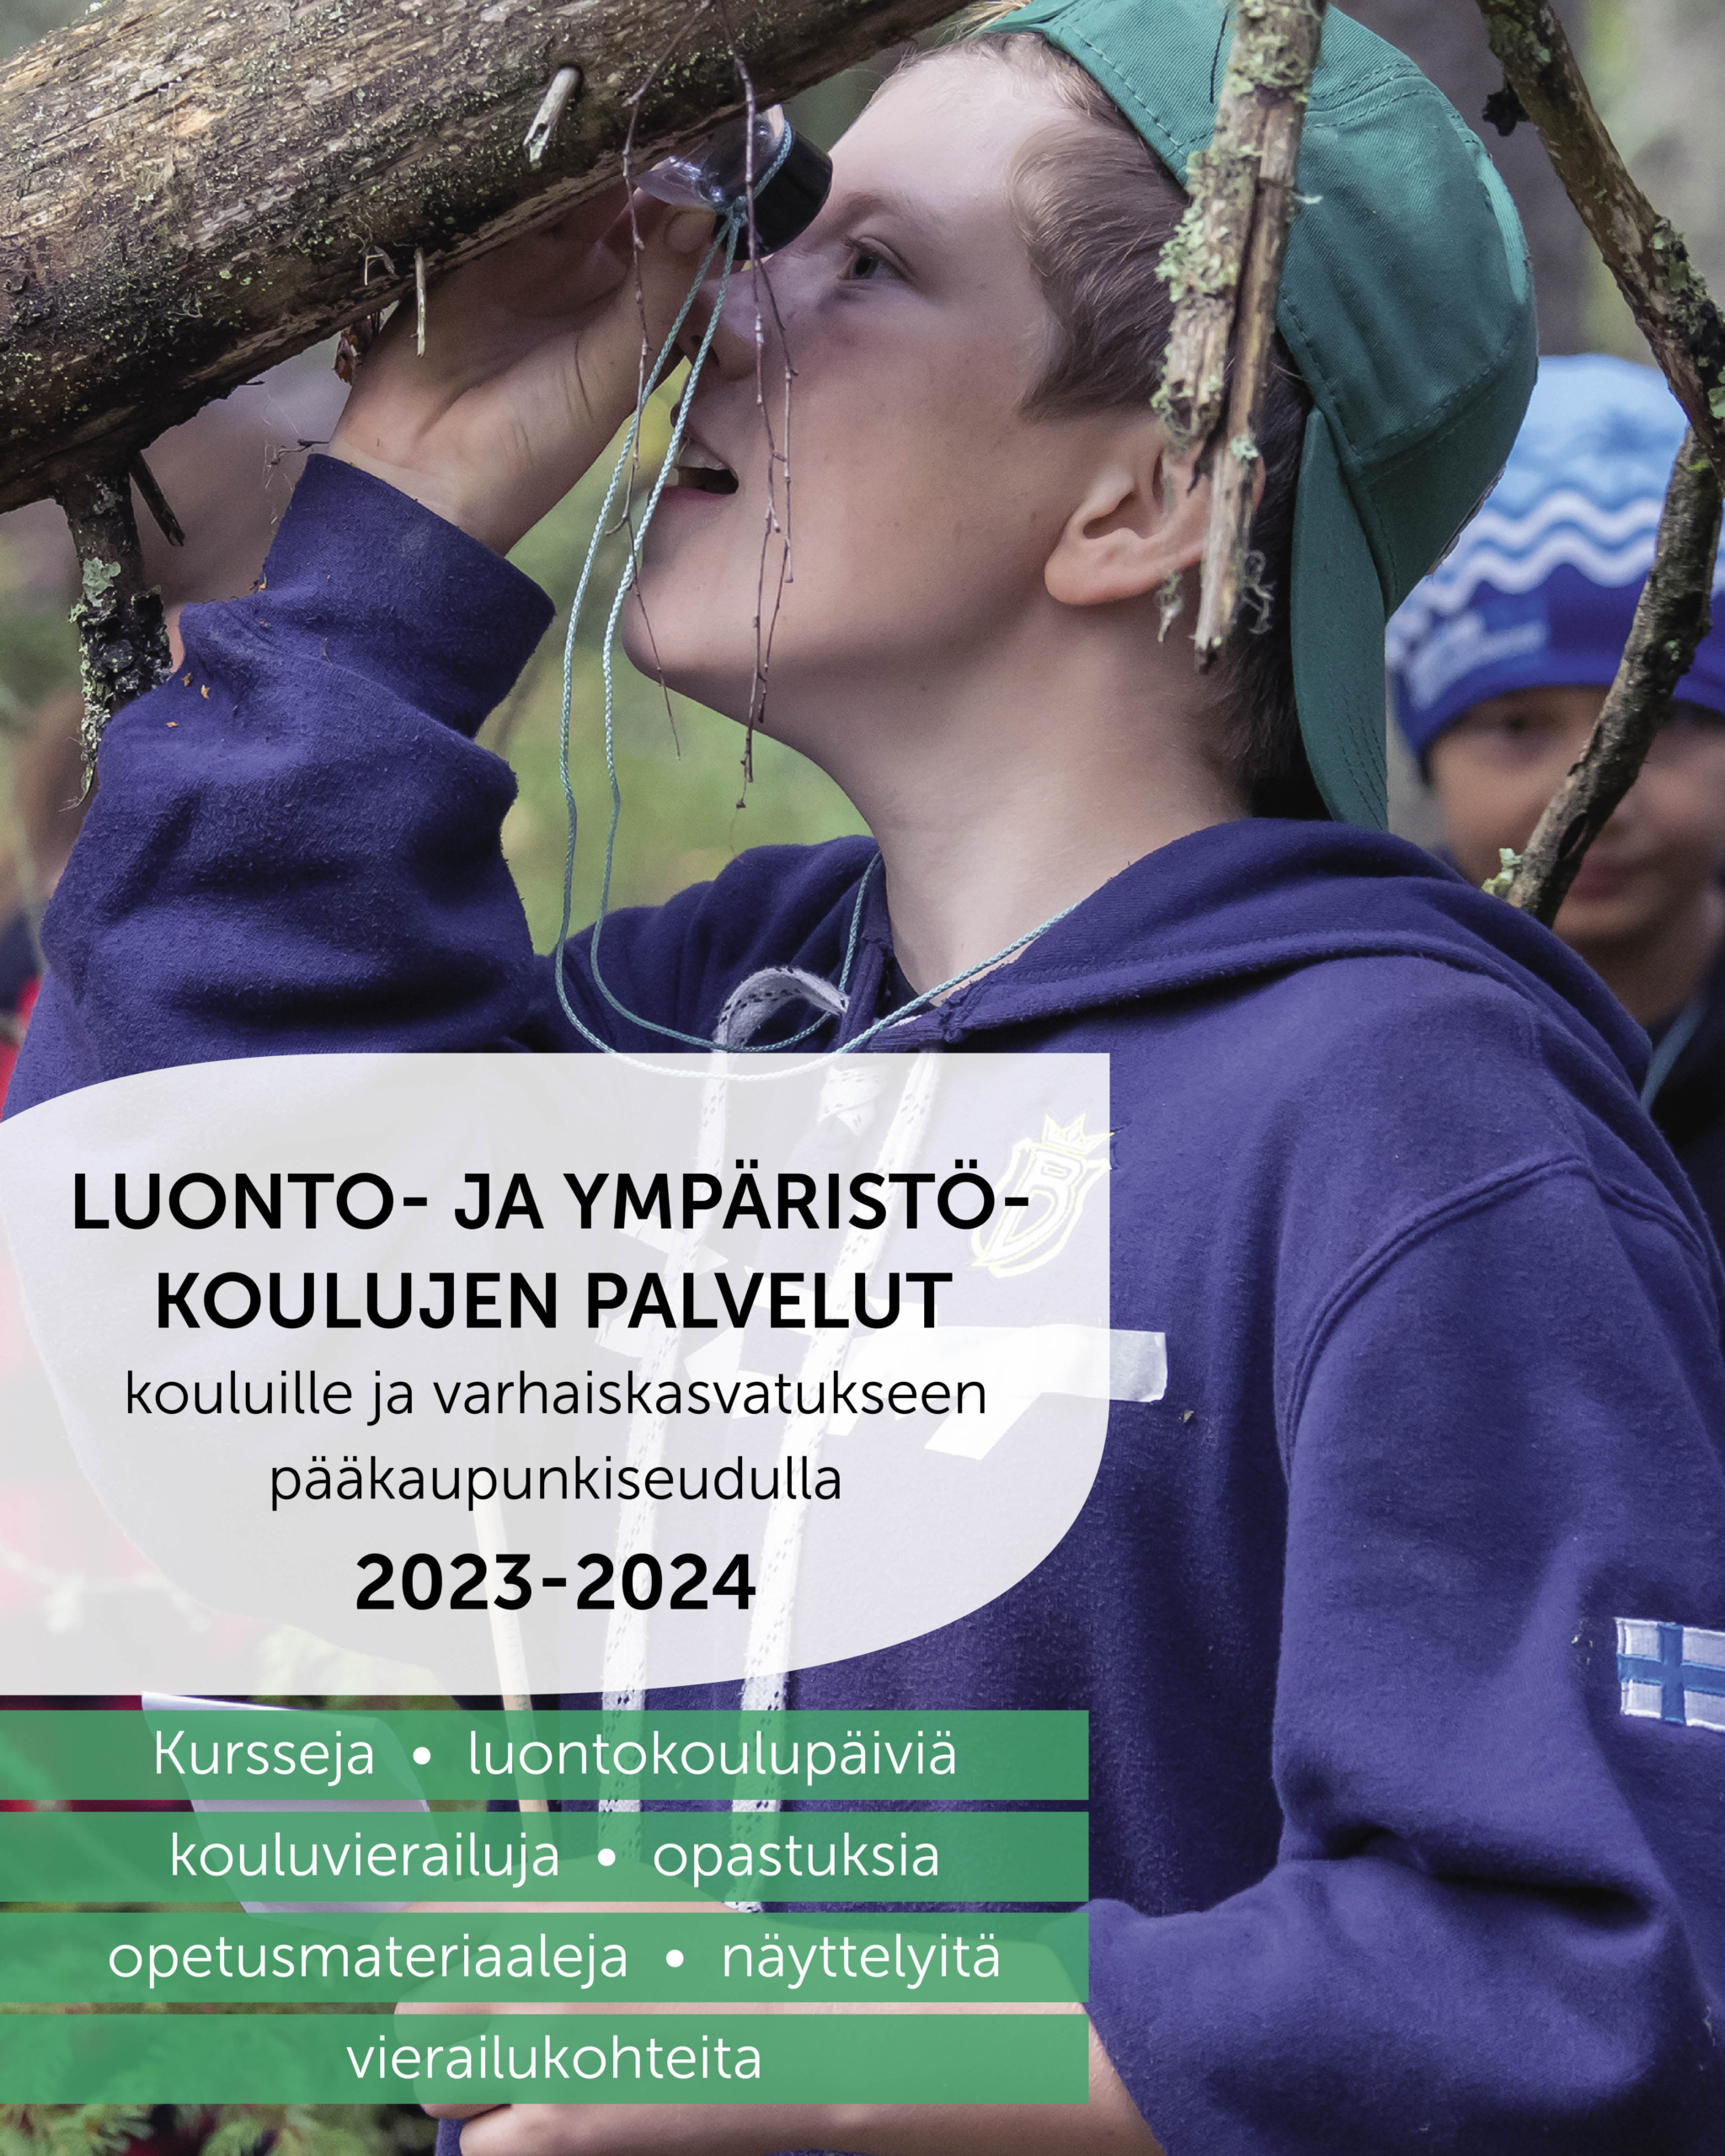 Mainoskuva: Luonto- ja ympäristökoulujen palvelut kouluille ja varhaiskasvatukseen pääkaupunkiseudulla 2023-2024